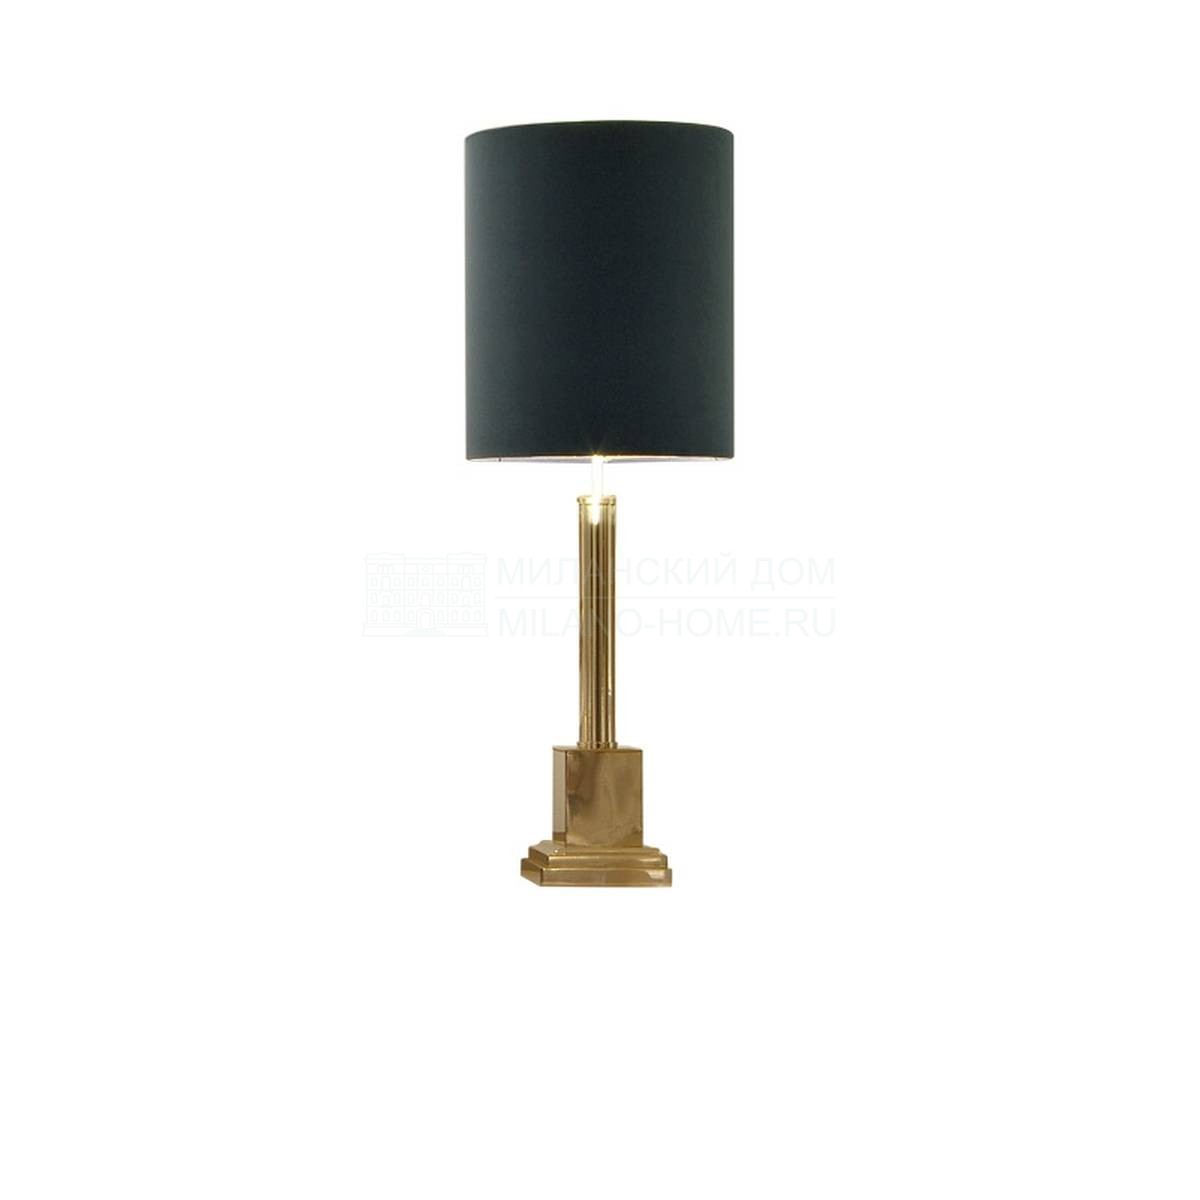 Настольная лампа Colonna ottone/ light из Италии фабрики SOFTHOUSE